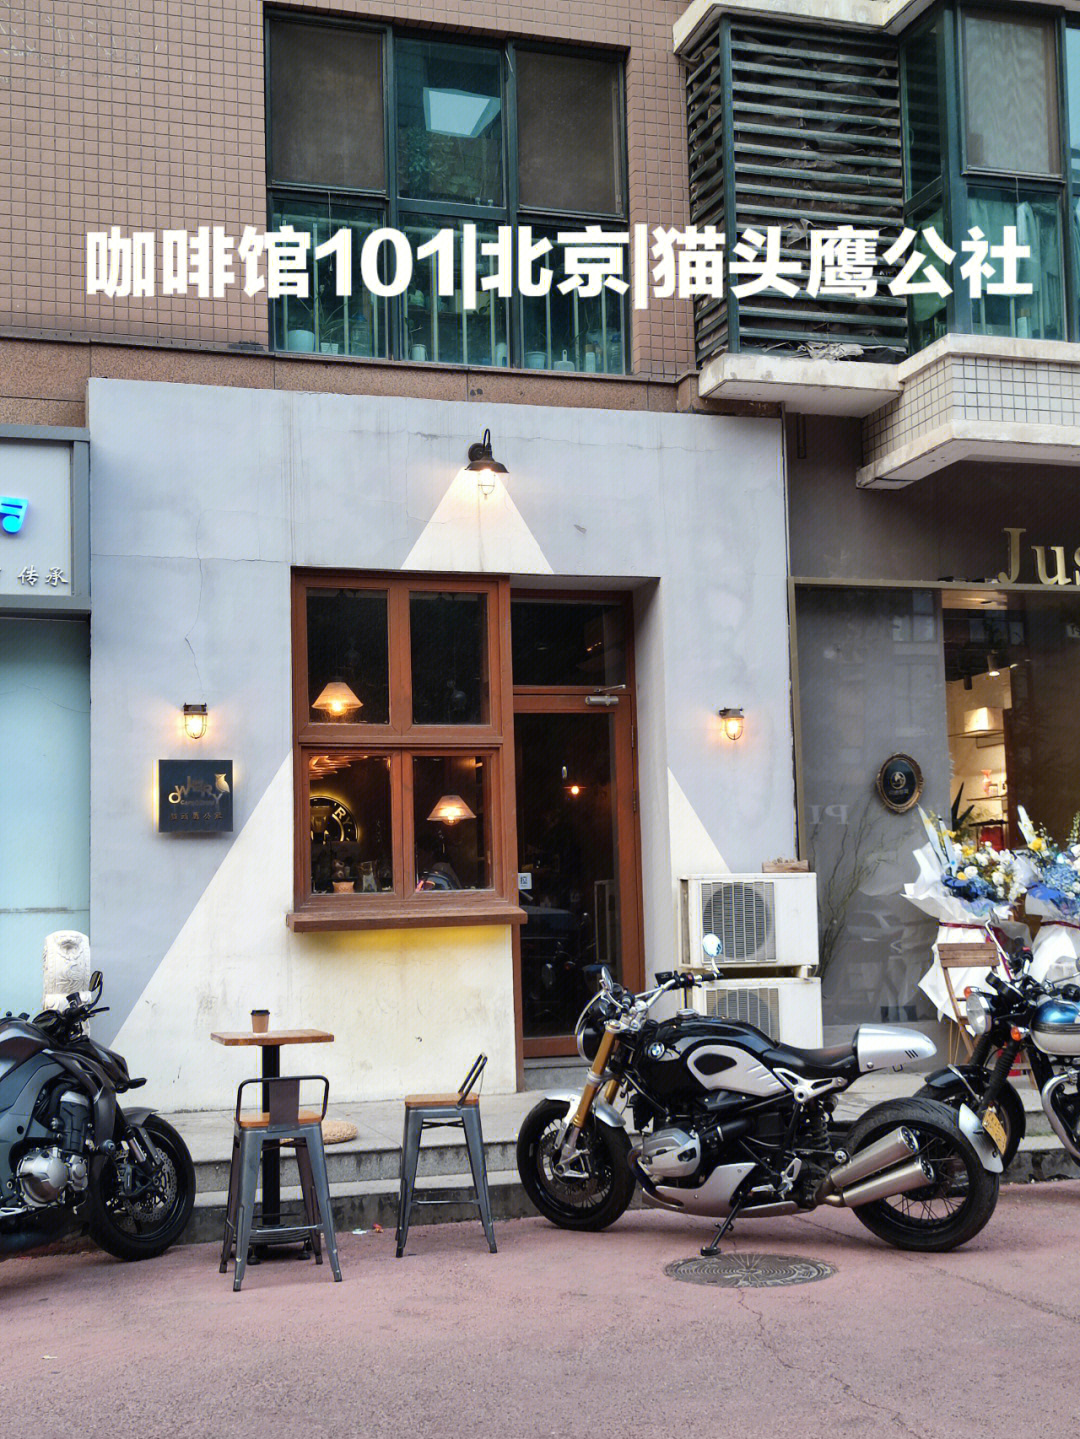 咖啡馆101北京猫头鹰公社